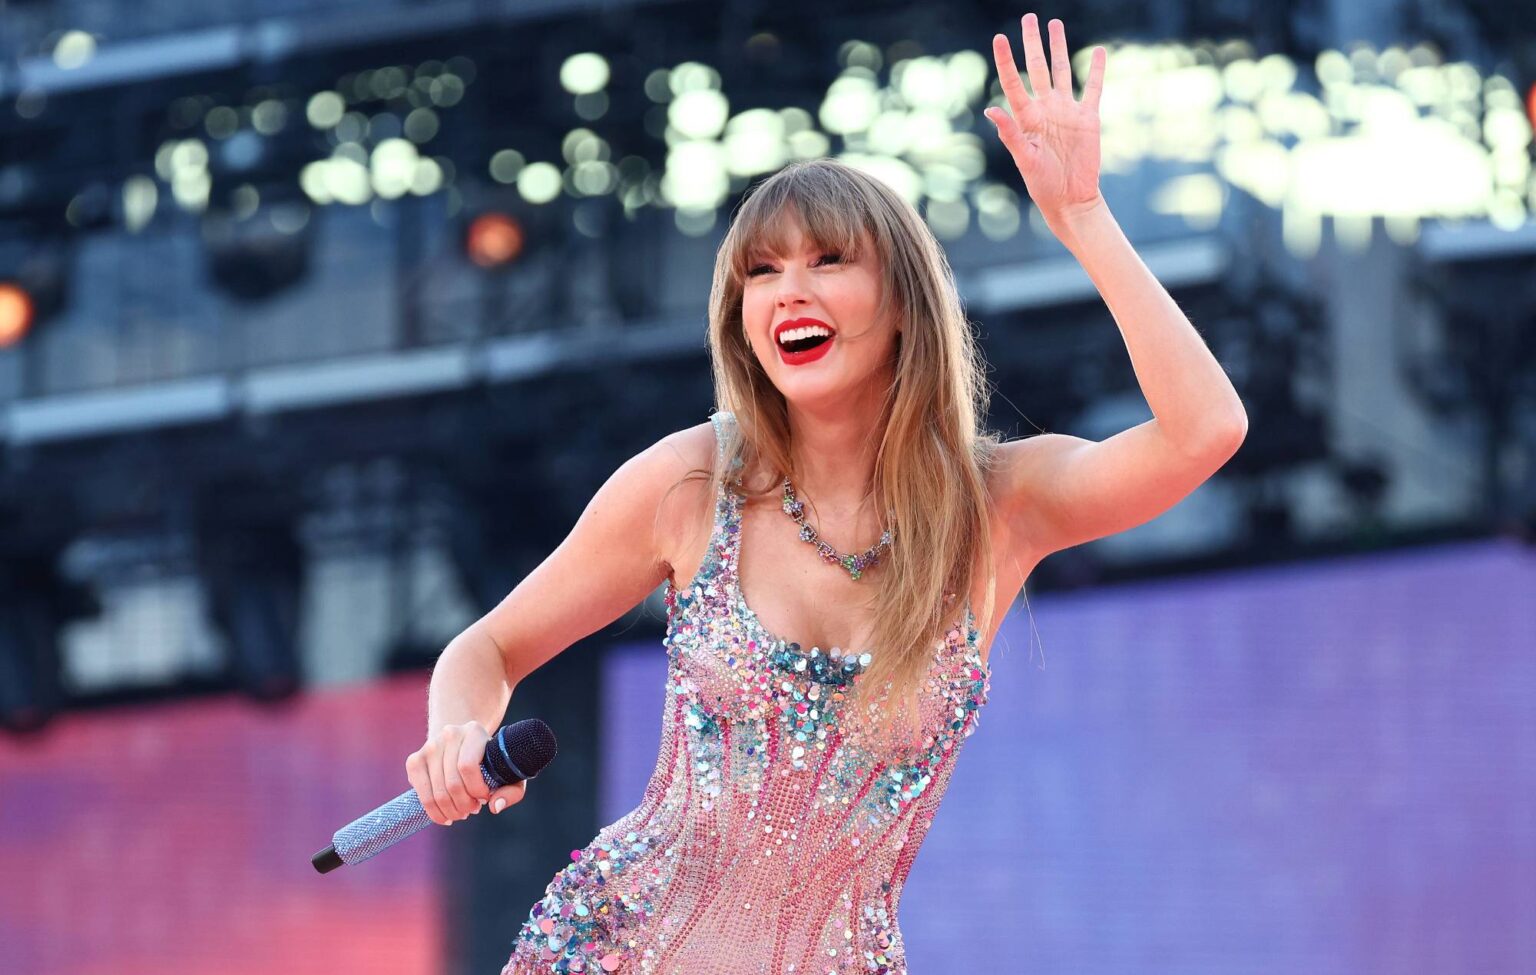 Acordo exclusivo da Taylor Swift Cingapura criticado por funcionário das Filipinas